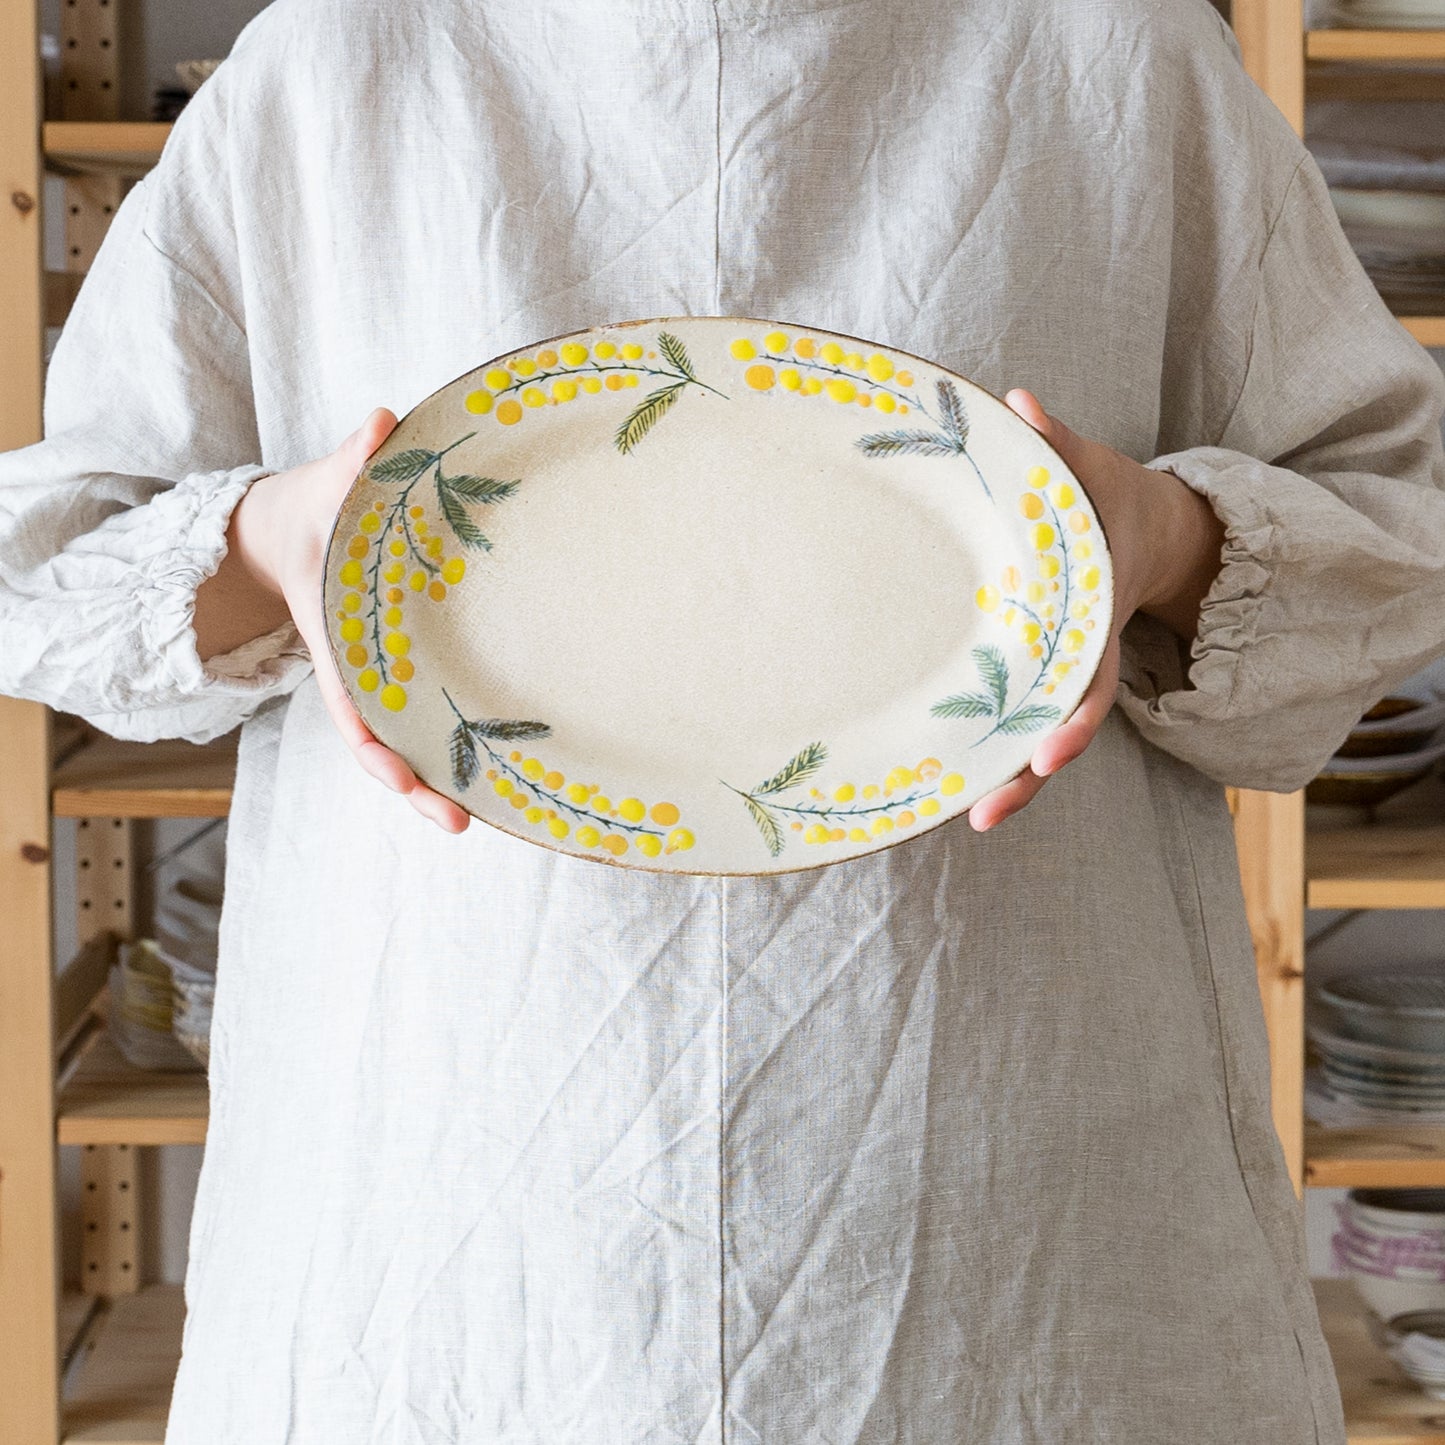 春のようにポカポカあたたかみを感じる森野奈津子さんのミモザの楕円リム皿